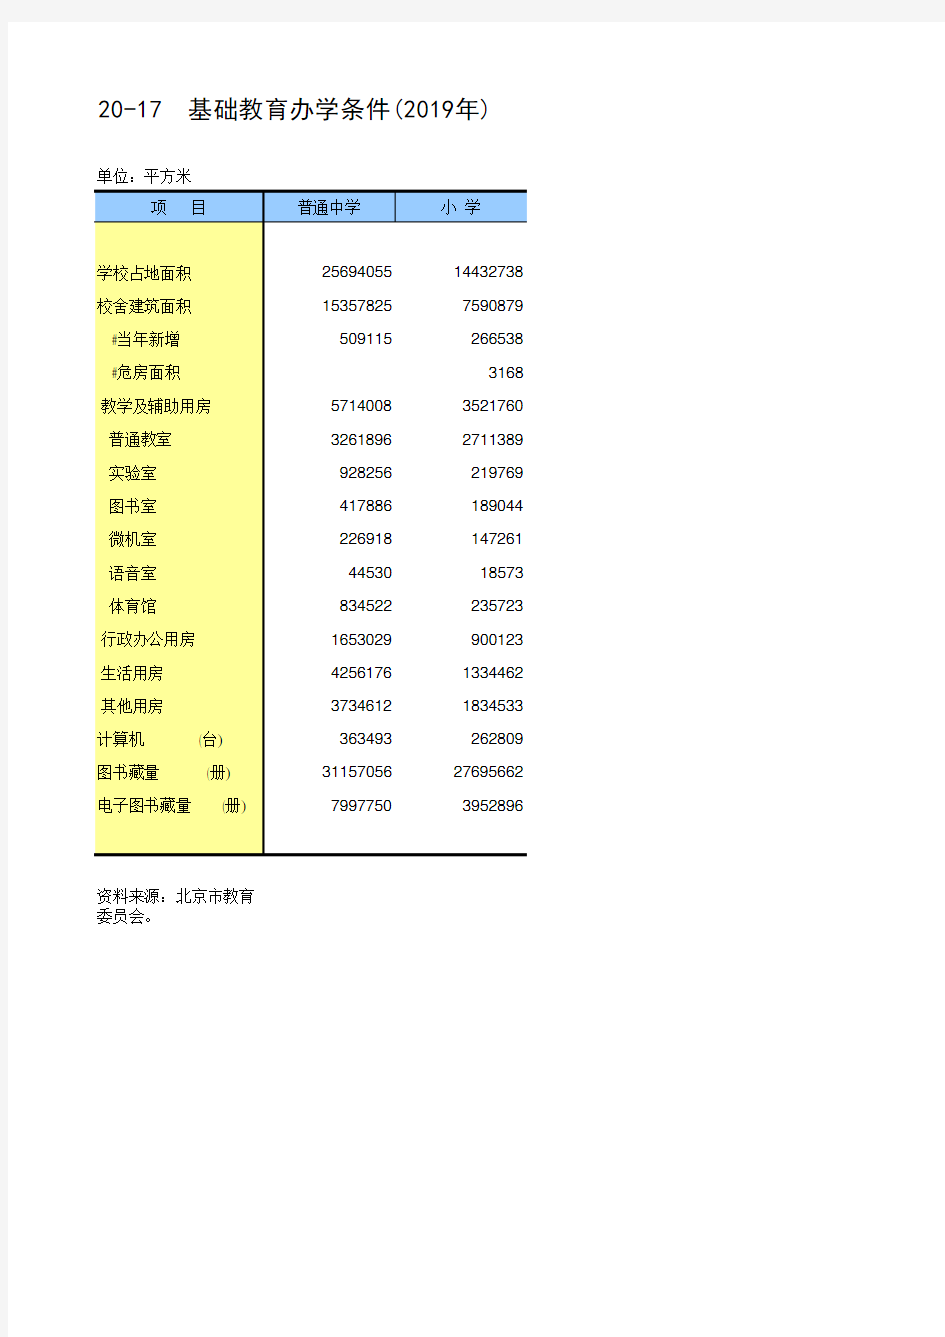 北京统计年鉴2020各区社会经济发展指标：基础教育办学条件(2019年)